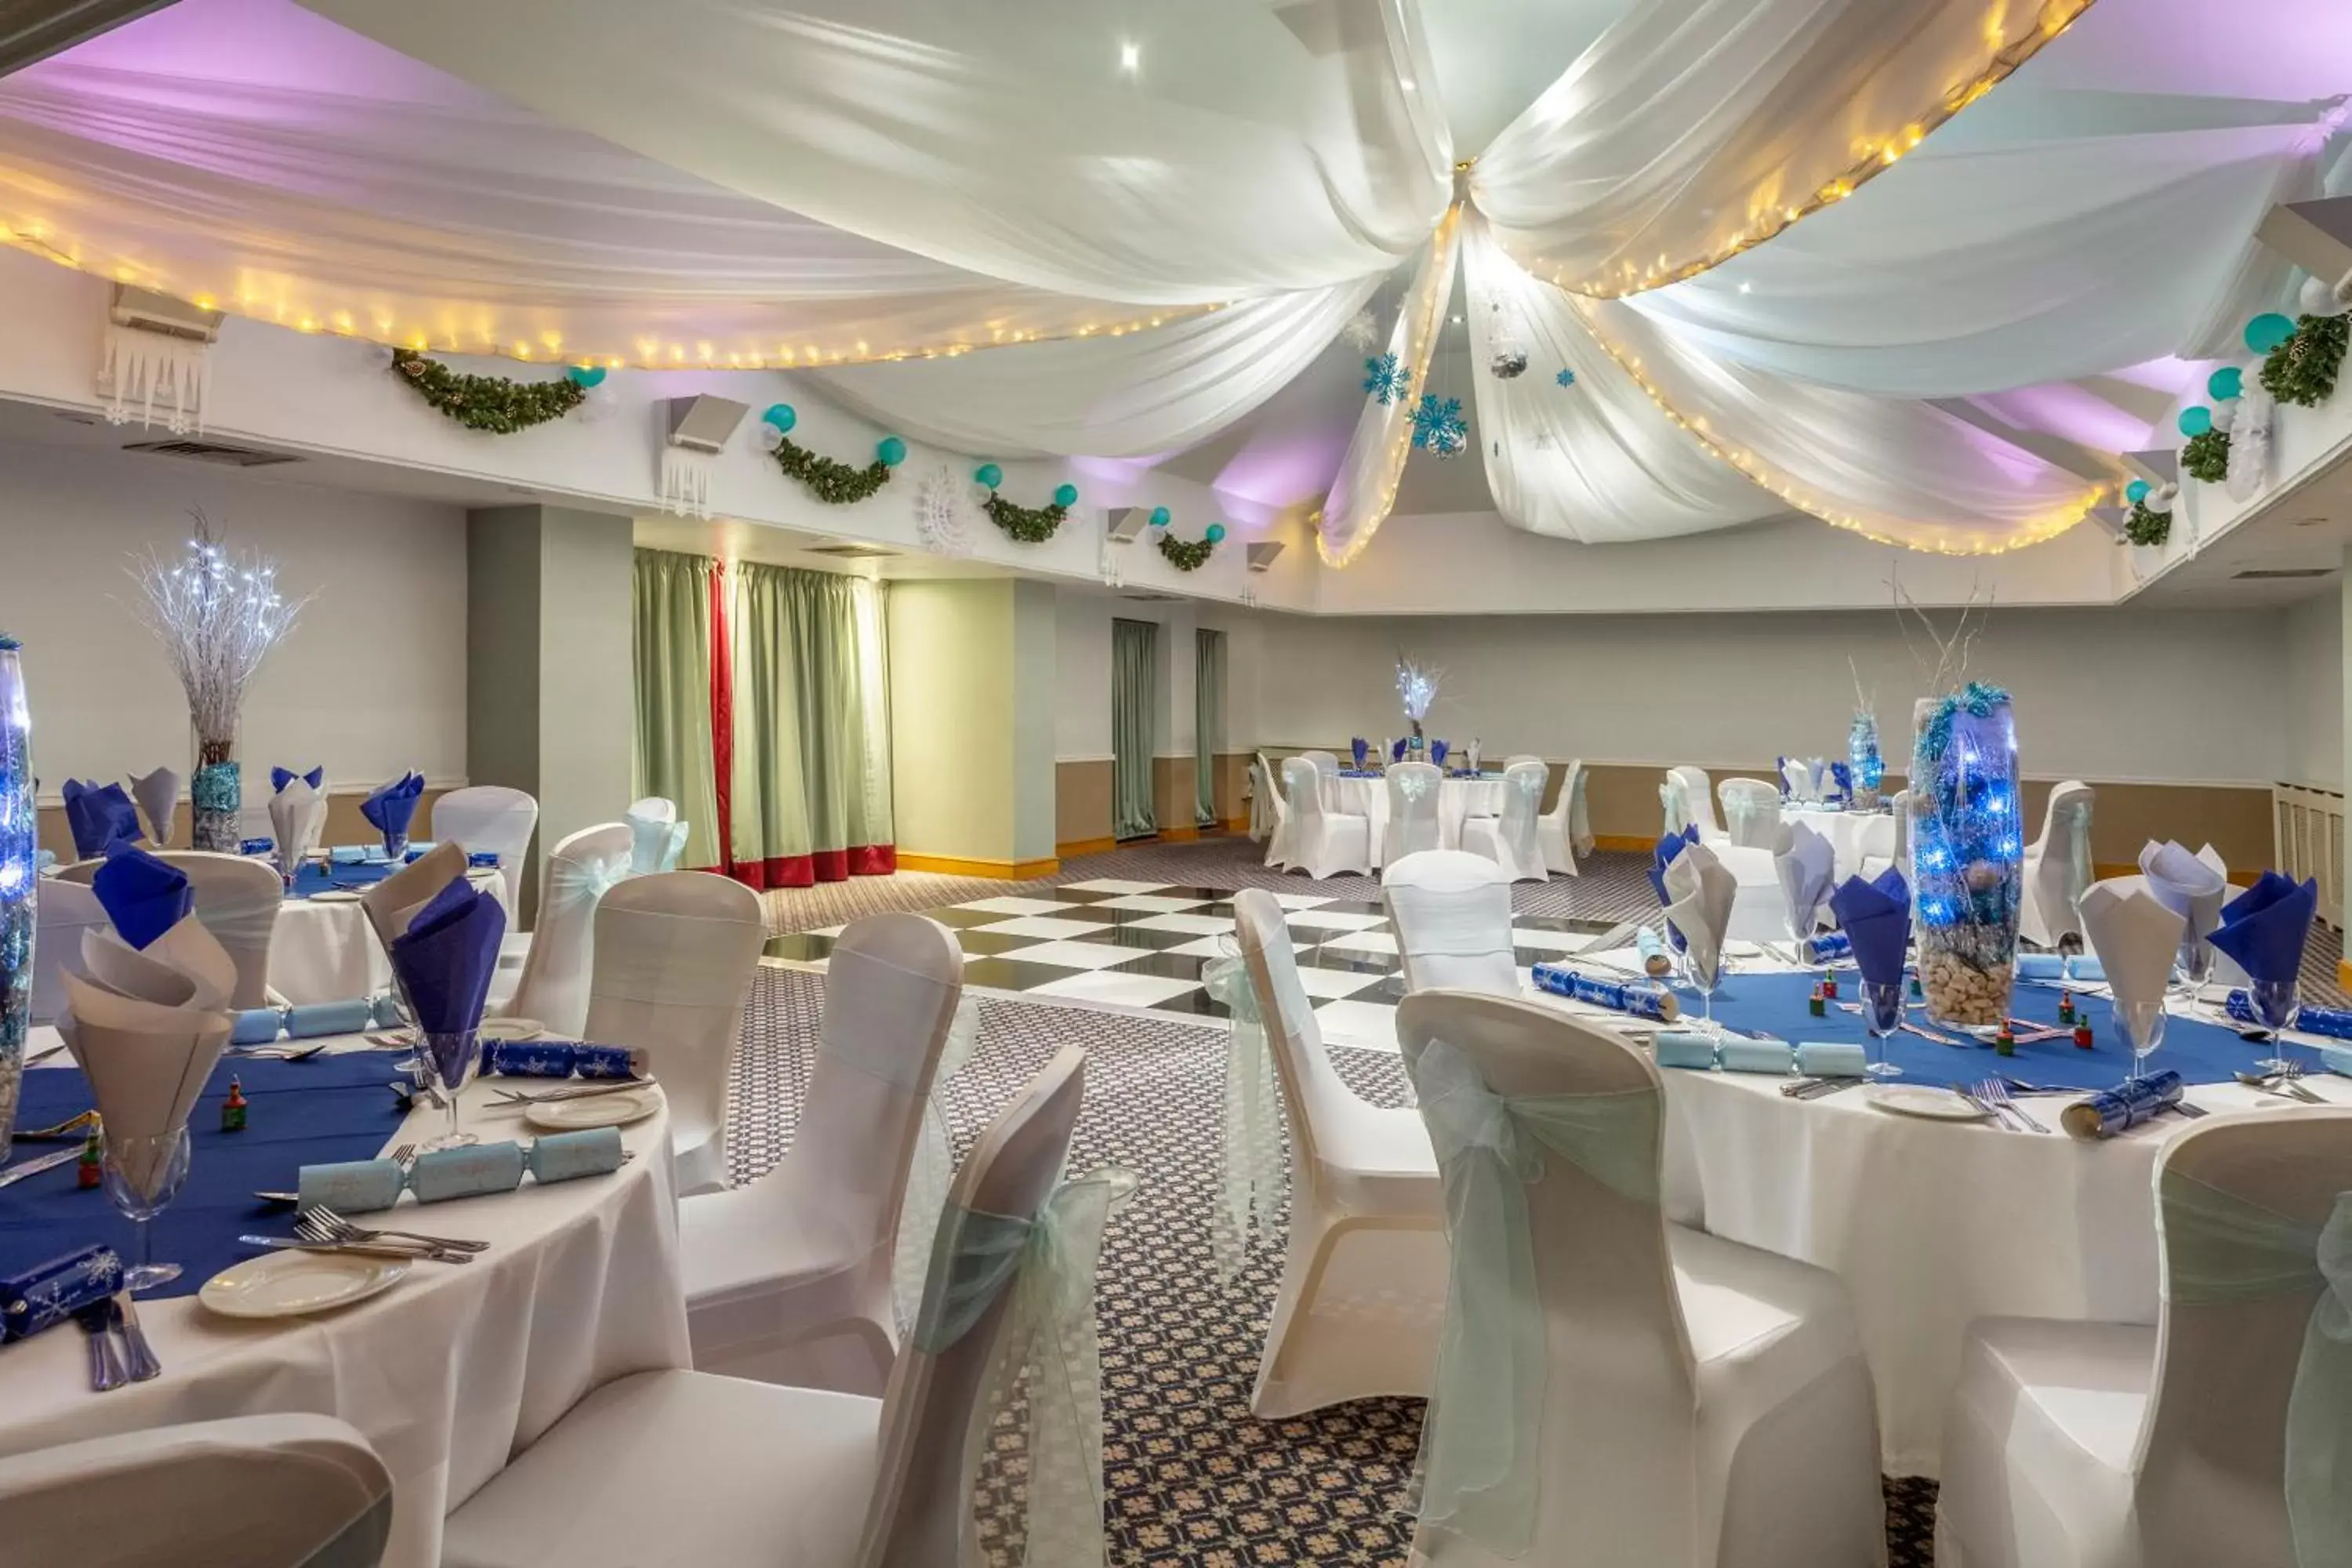 Banquet/Function facilities, Banquet Facilities in Bridgewood Manor Hotel & Spa